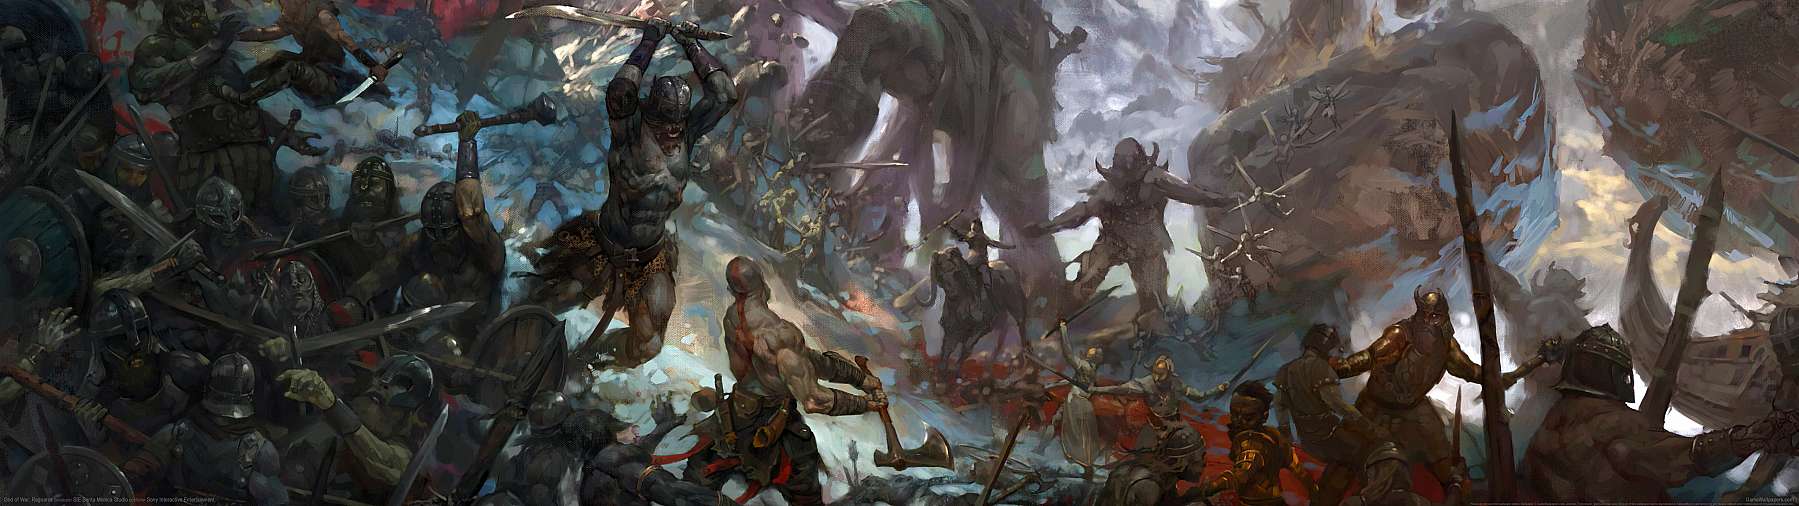 God of War: Ragnarok superwide wallpaper or background 07